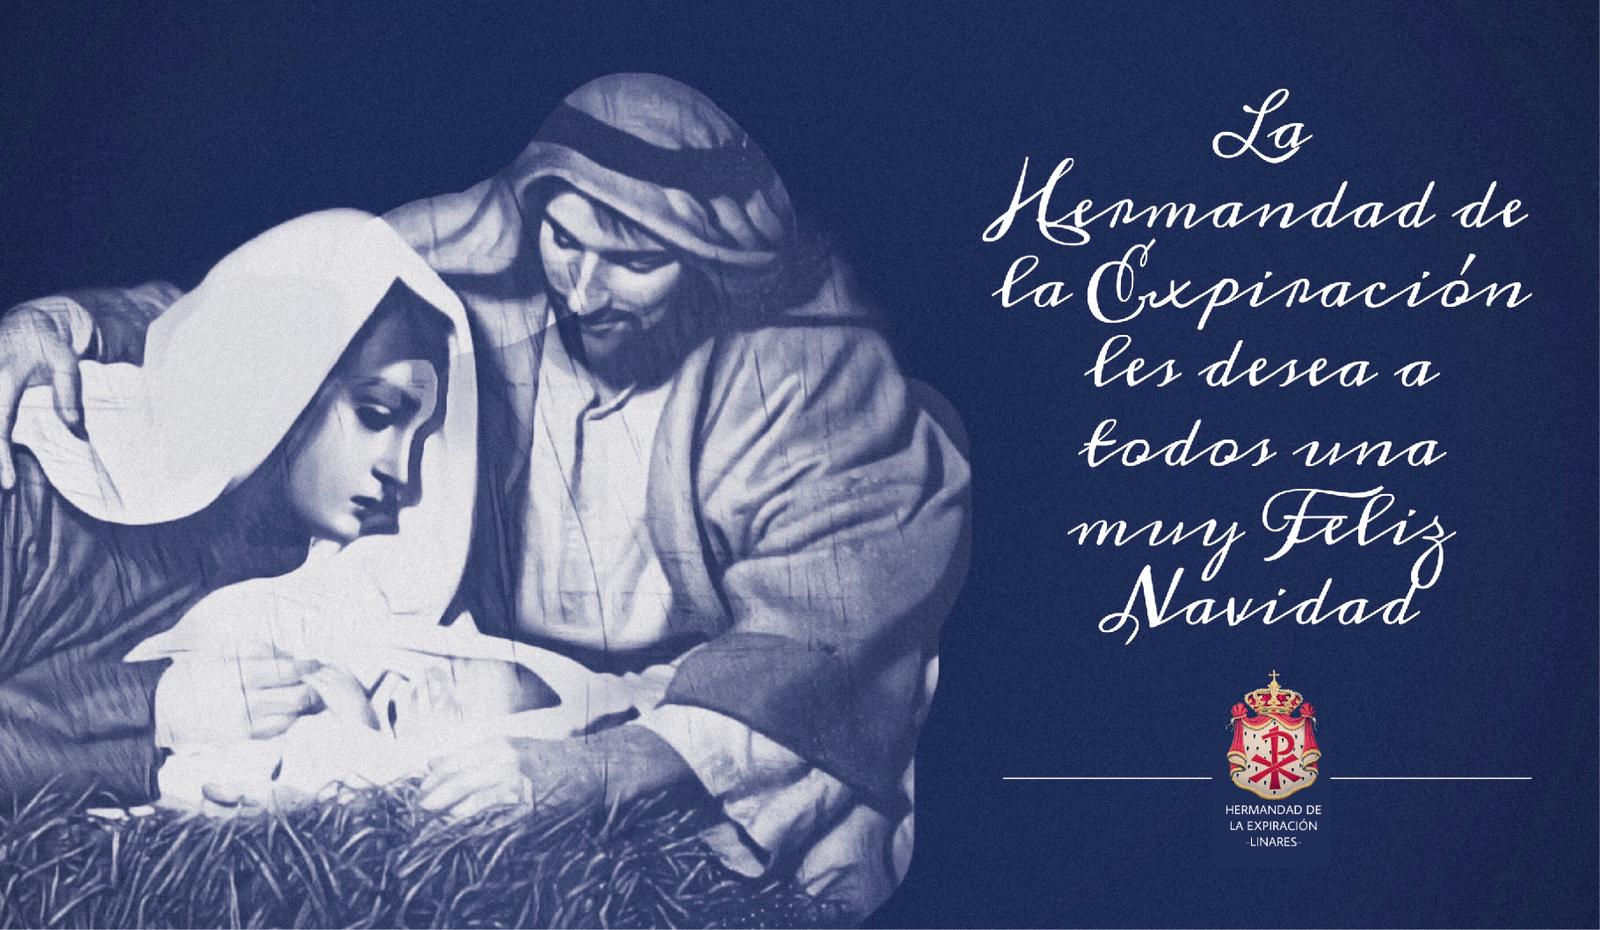 Felicitación navideña de la Expiración diseñada por el hermano Luis Francisco Gómez.